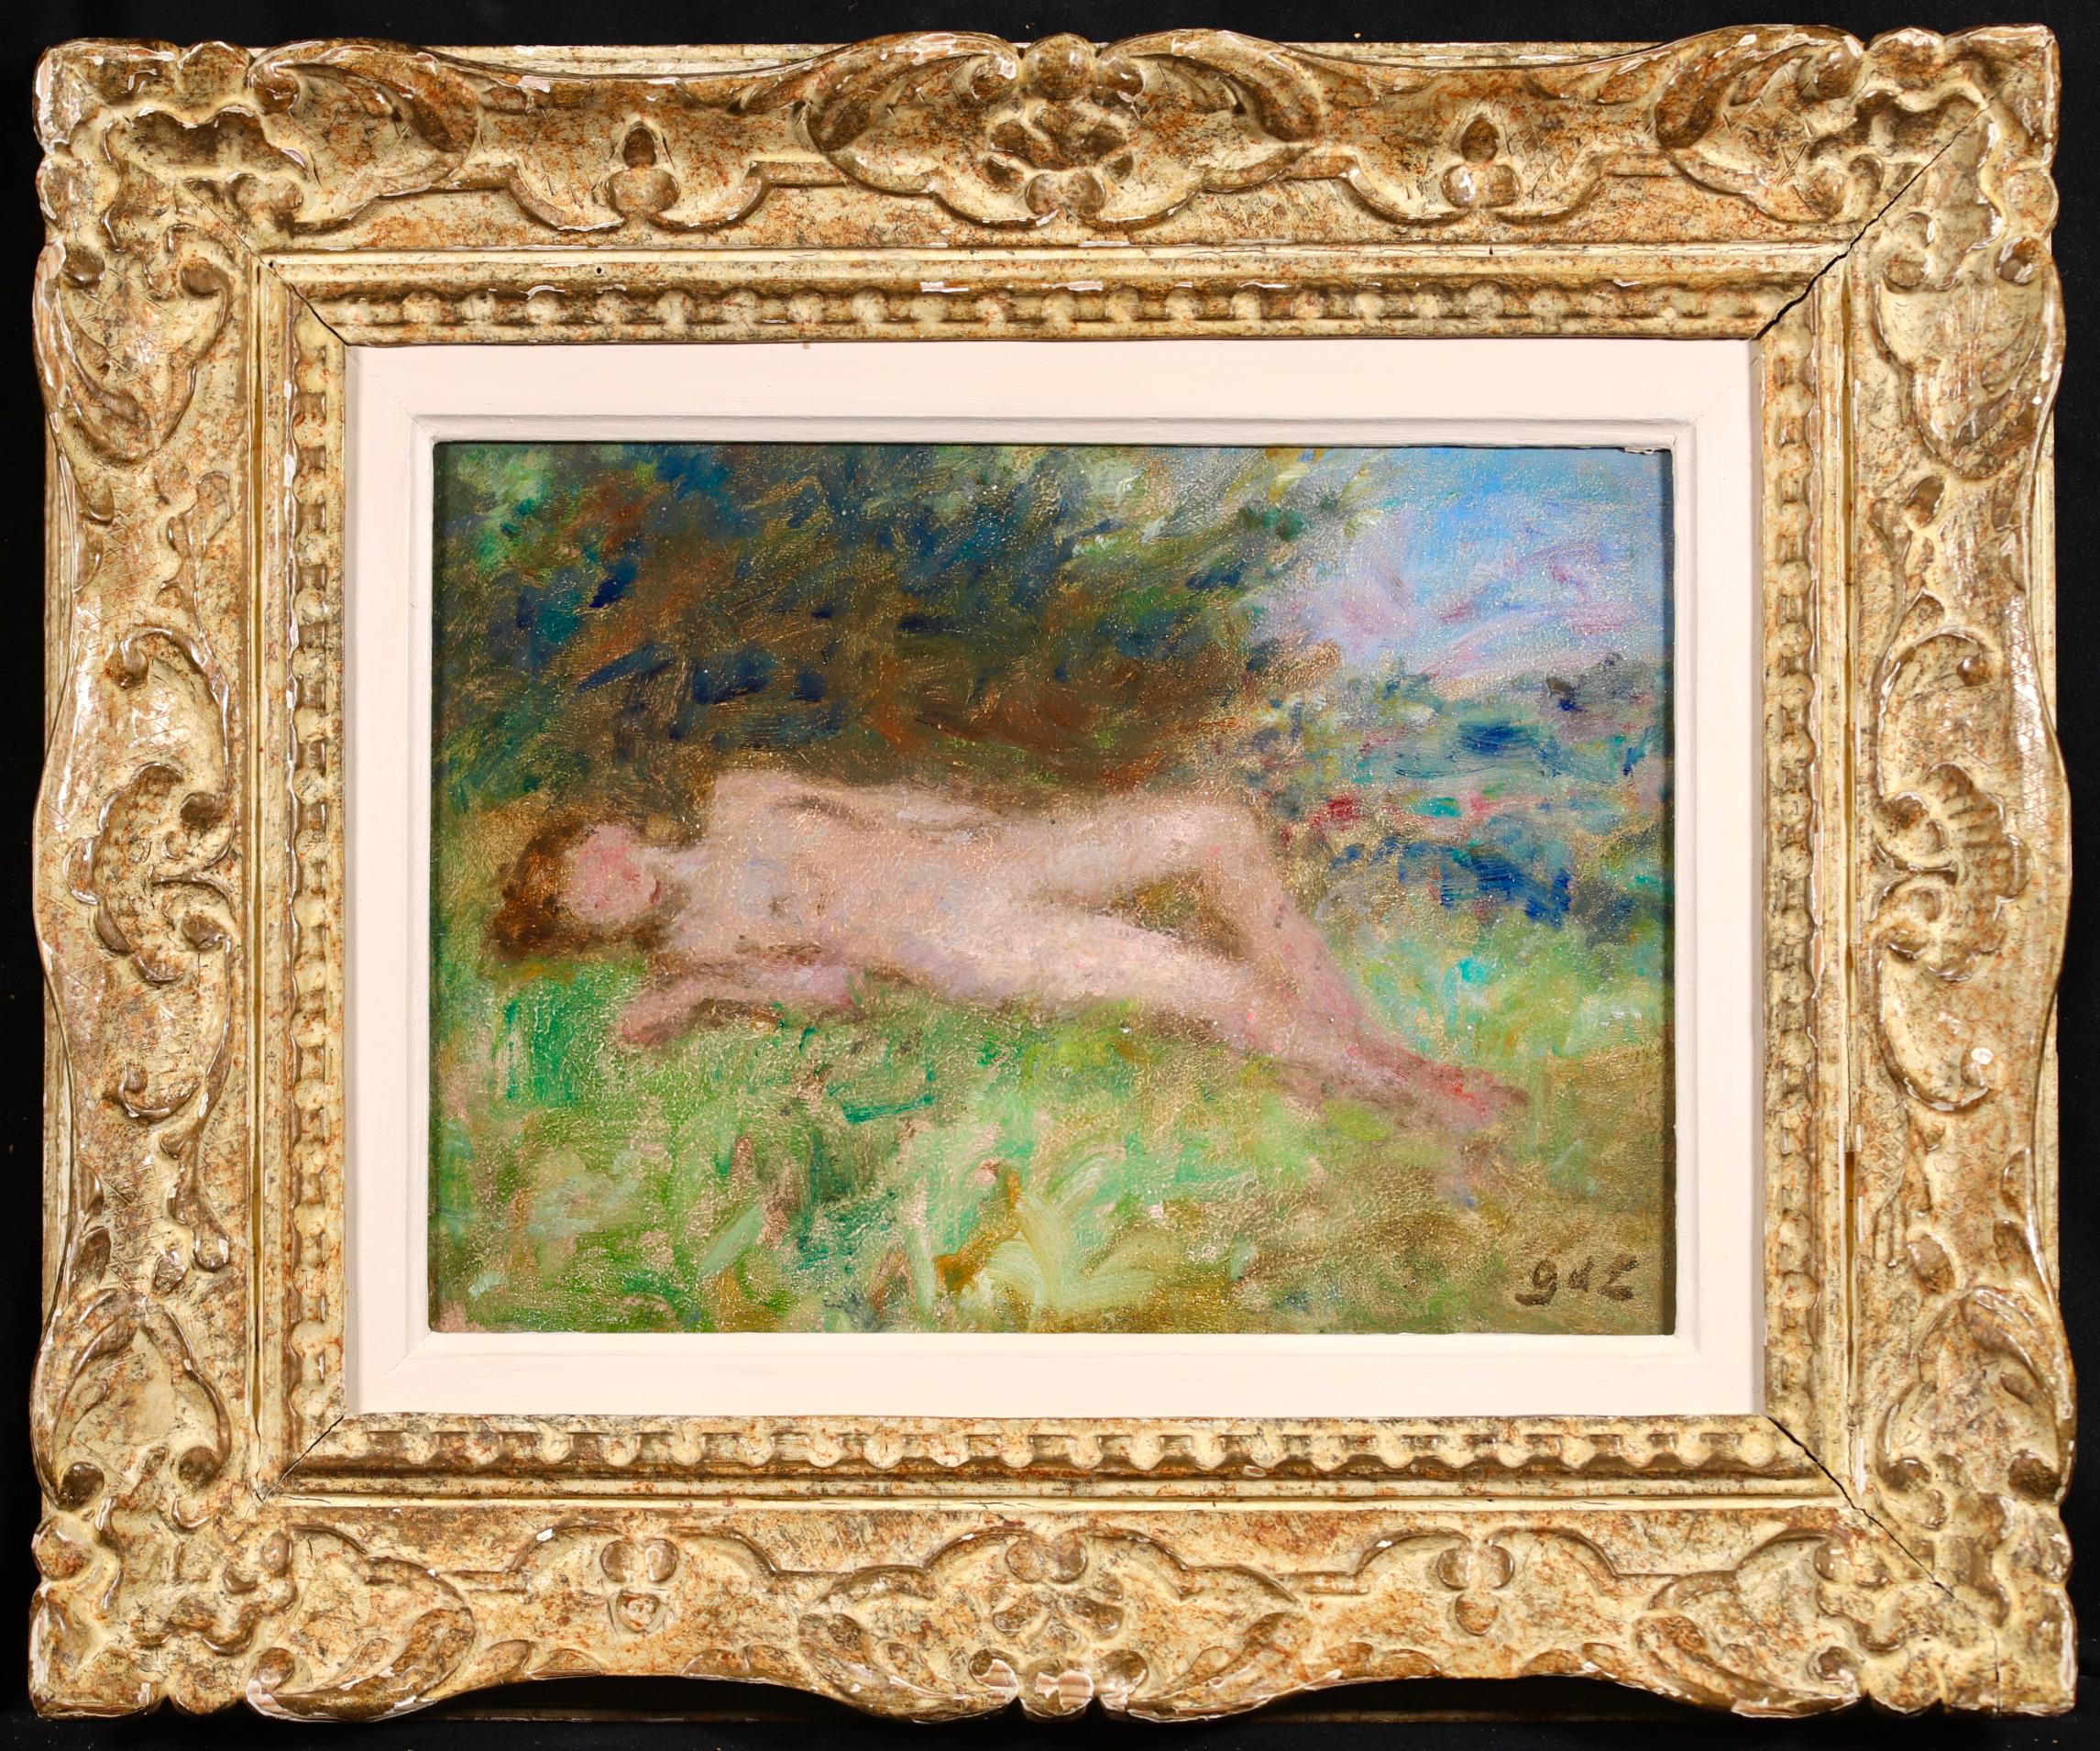 Huile sur panneau signée par le peintre post impressionniste français Georges D'Espagnat, circa 1920. L'œuvre représente une femme nue étendue sur un carré d'herbe verte au sommet d'une colline avec une vue sur la vallée au loin.

Signature :
Signé